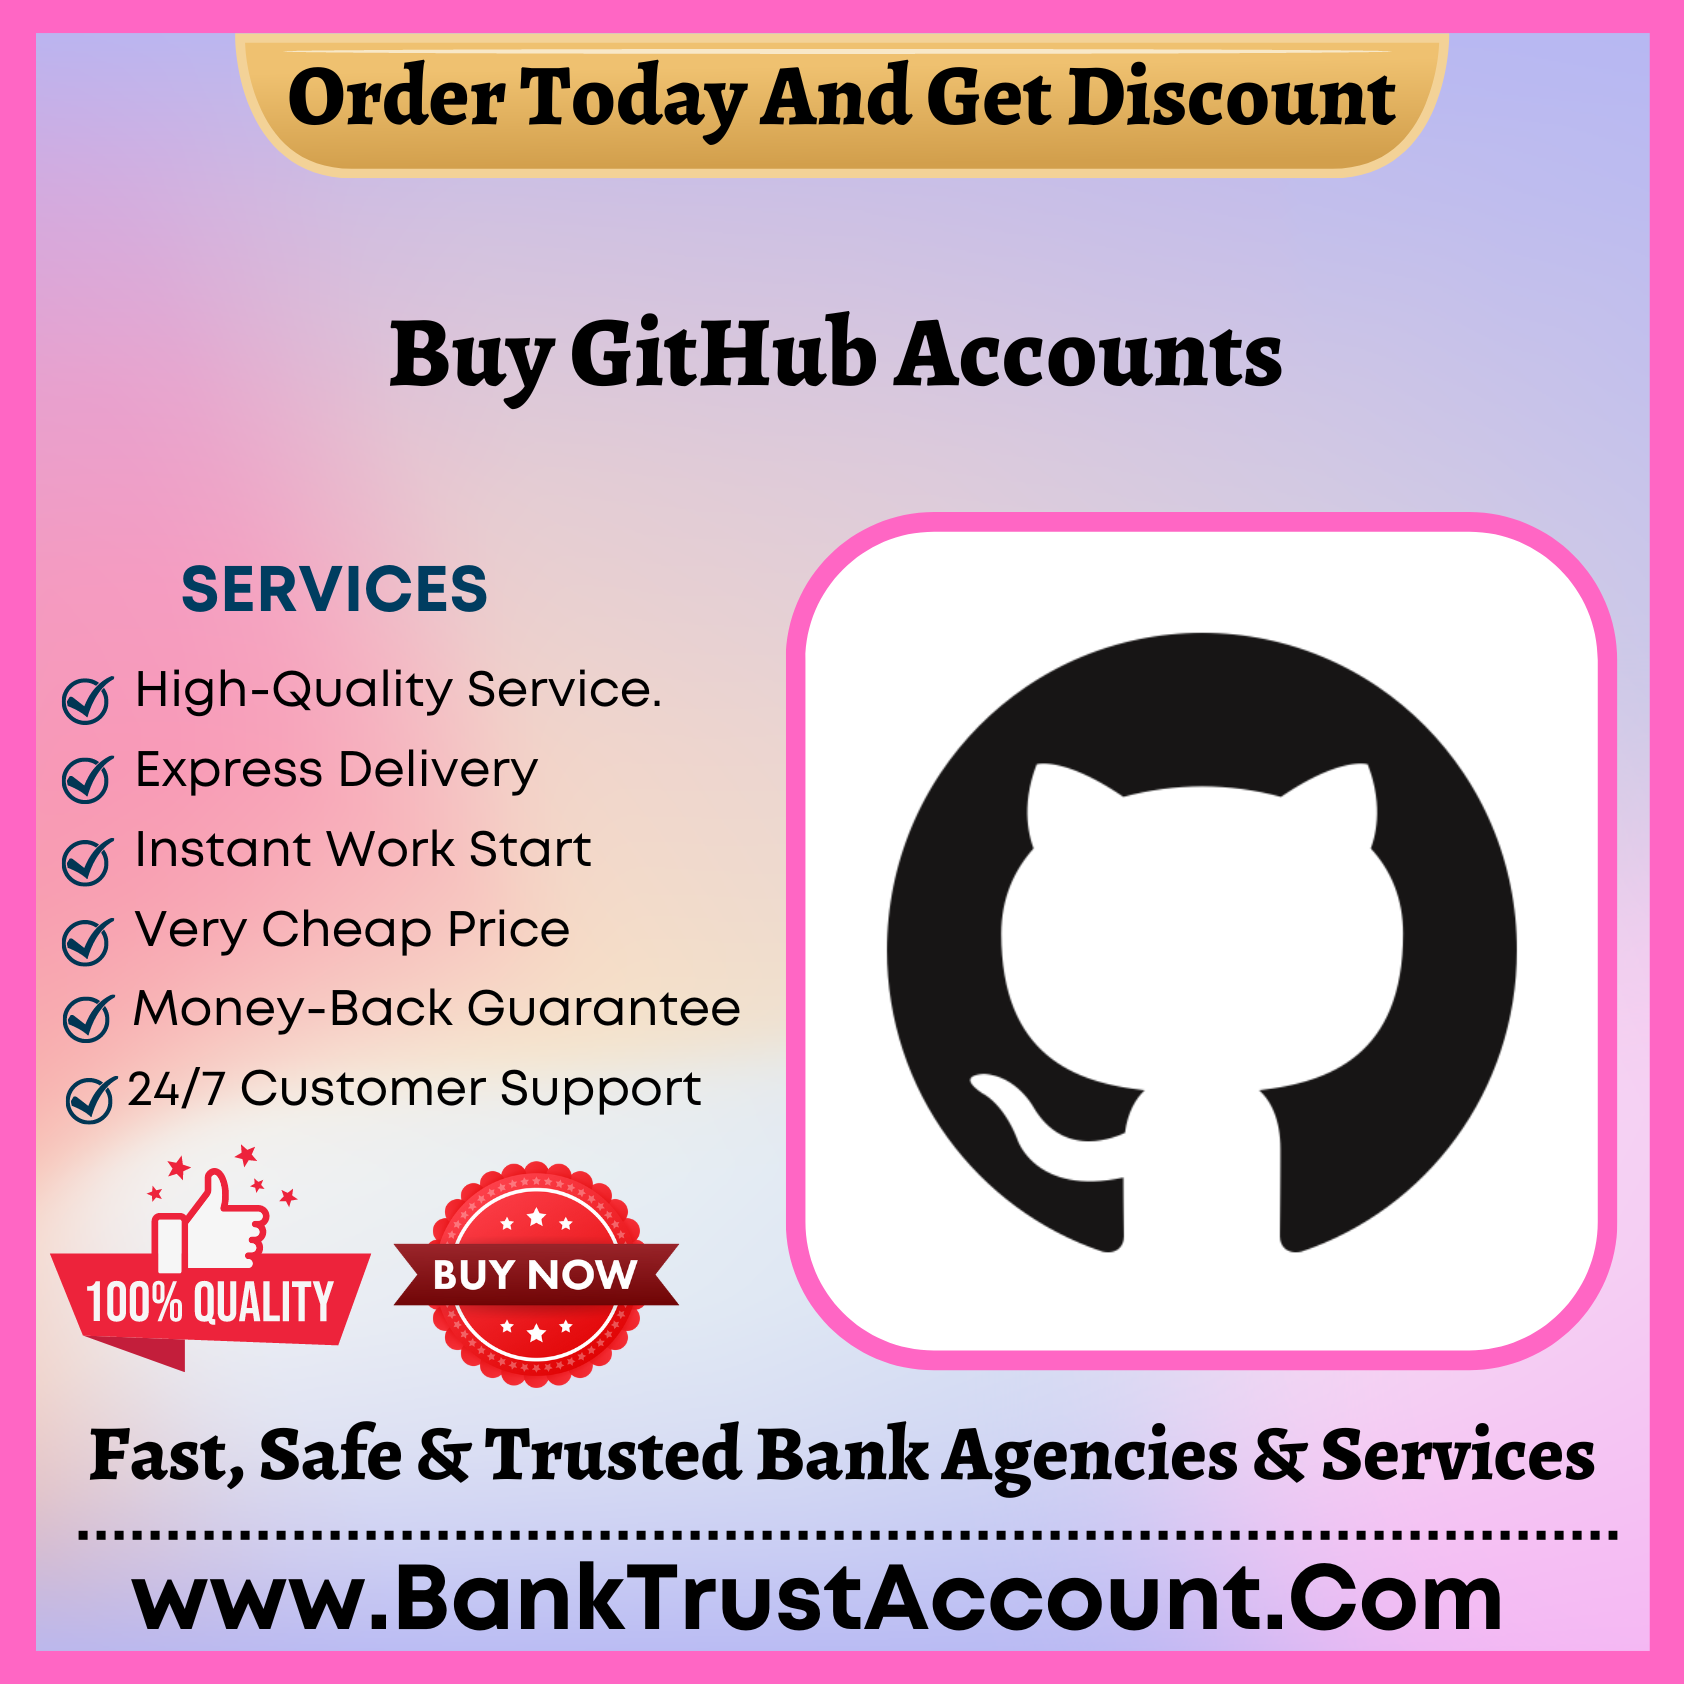 Buy GitHub Accounts - 100% Fully KYC Verified - BankTrustAccount